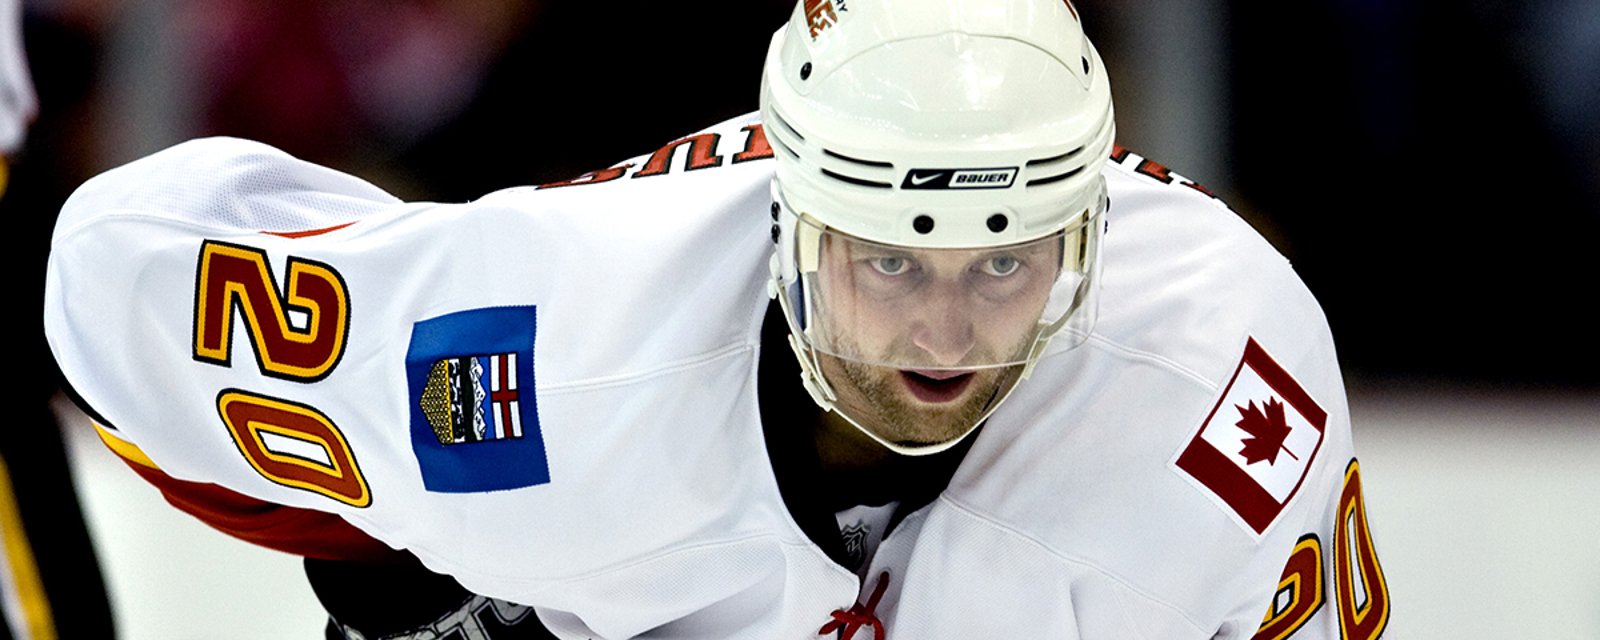 Former NHLer Kristian Huselius badly burned in horrific accident